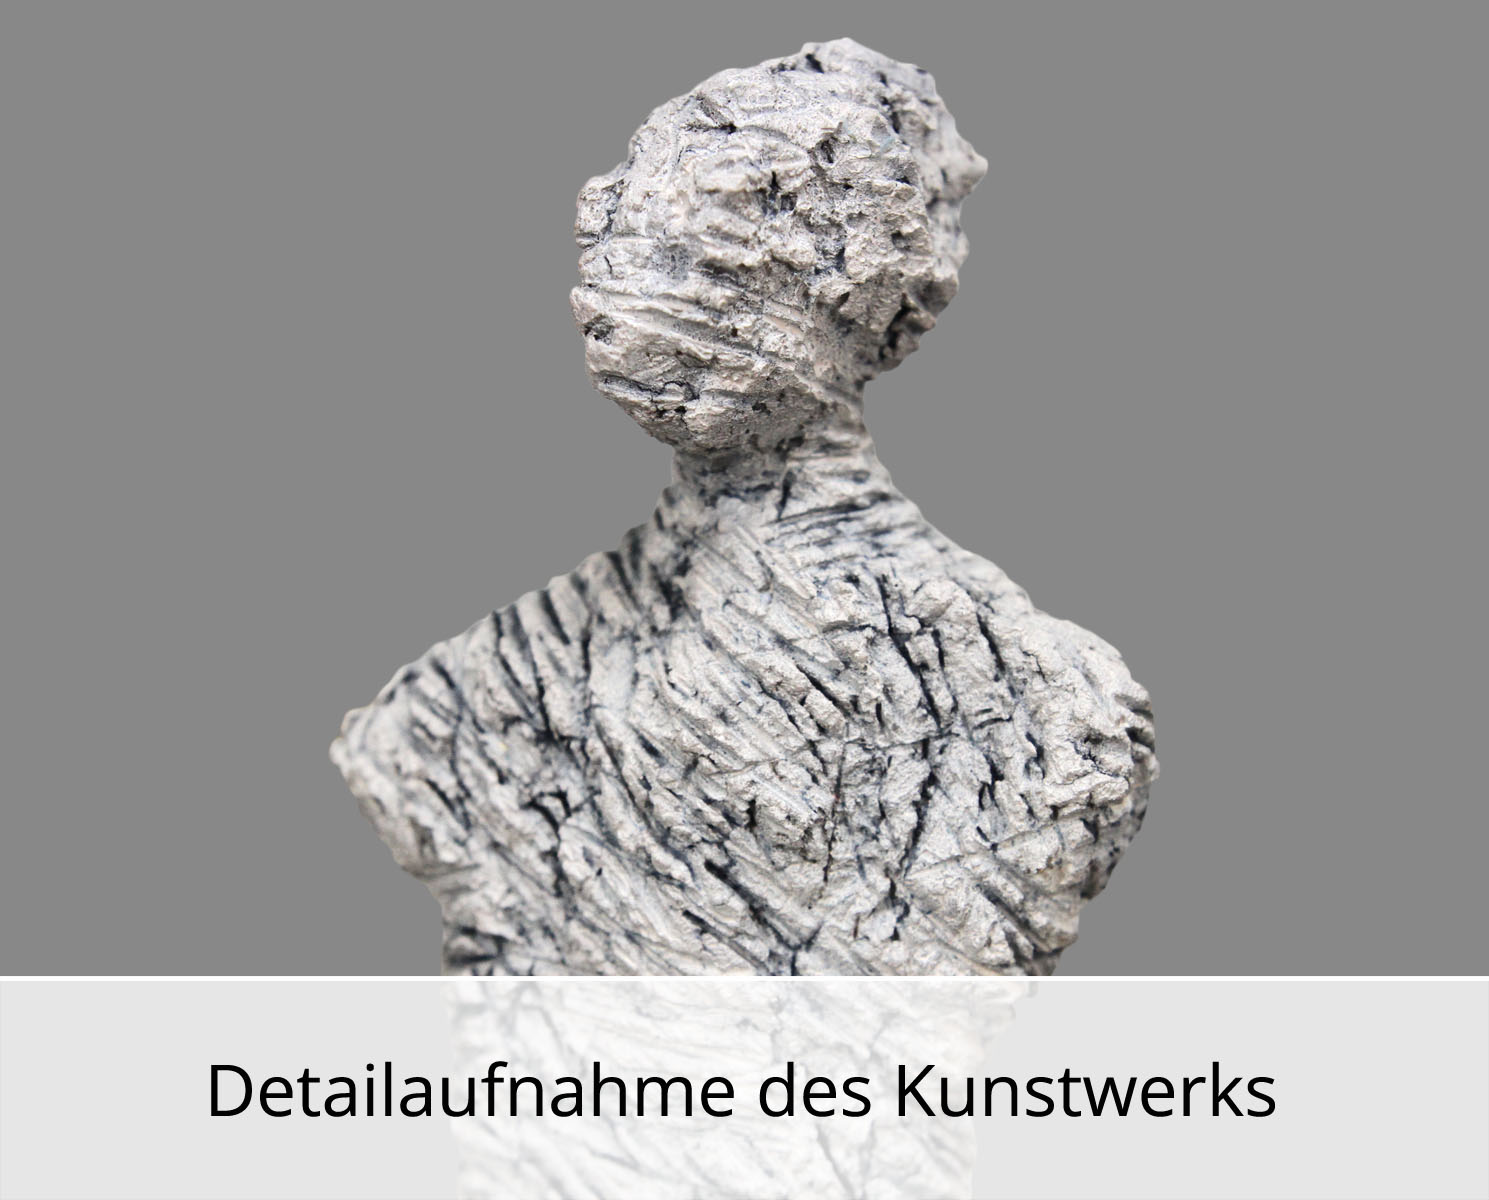 C. Blechschmidt: In weiß gehüllt, zeitgenössische Plastik, Original/Unikat